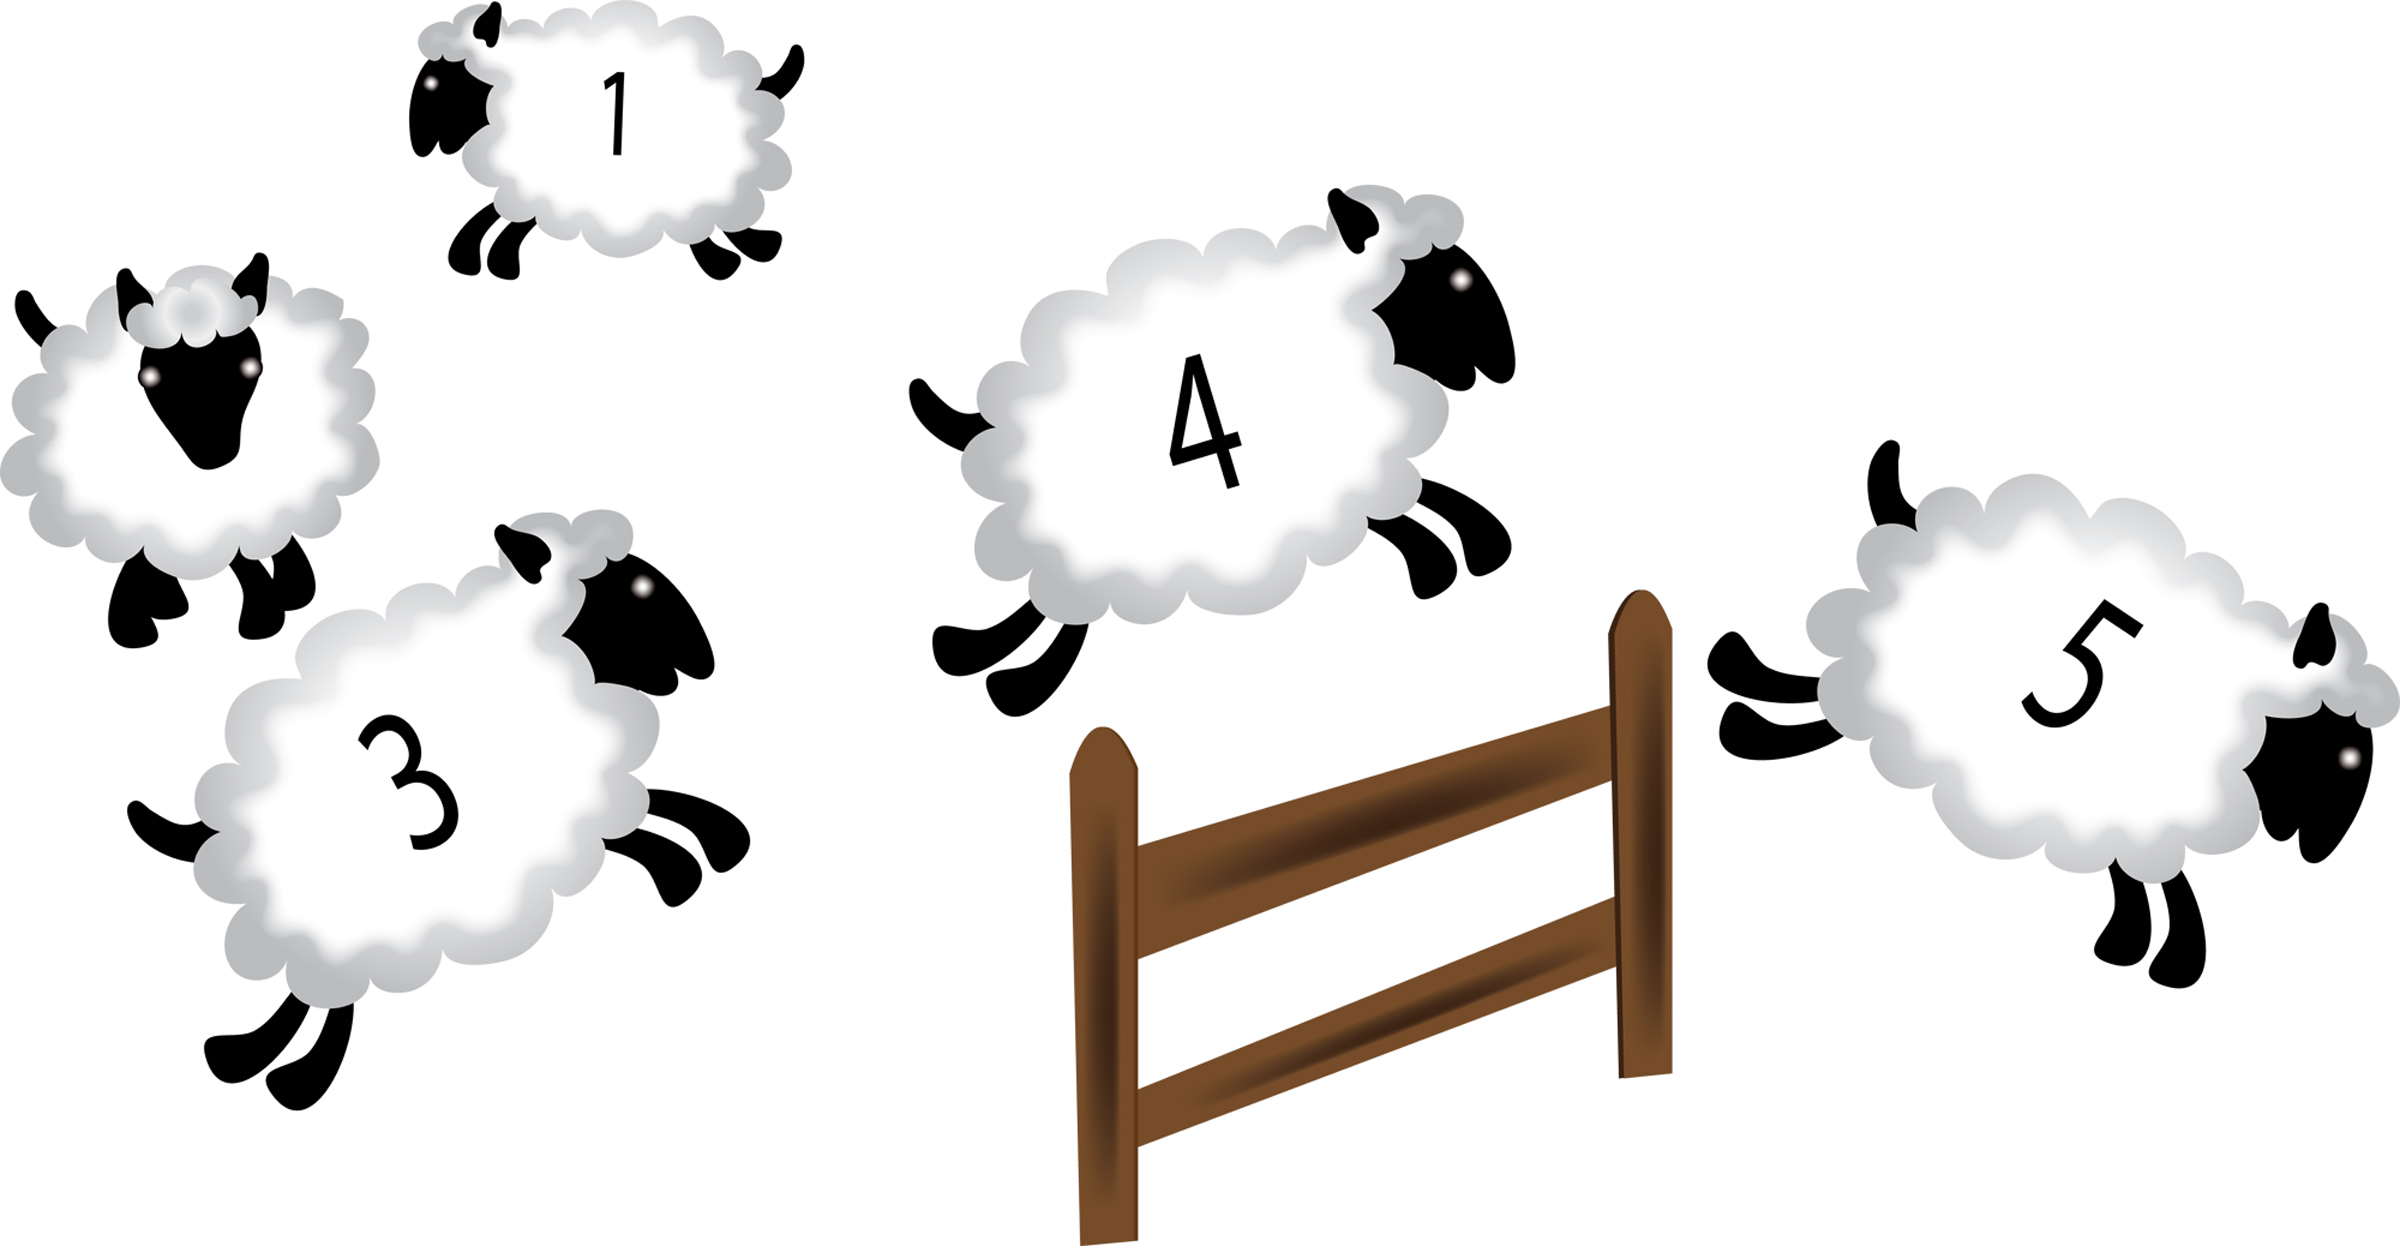 contar ovejas para dormir